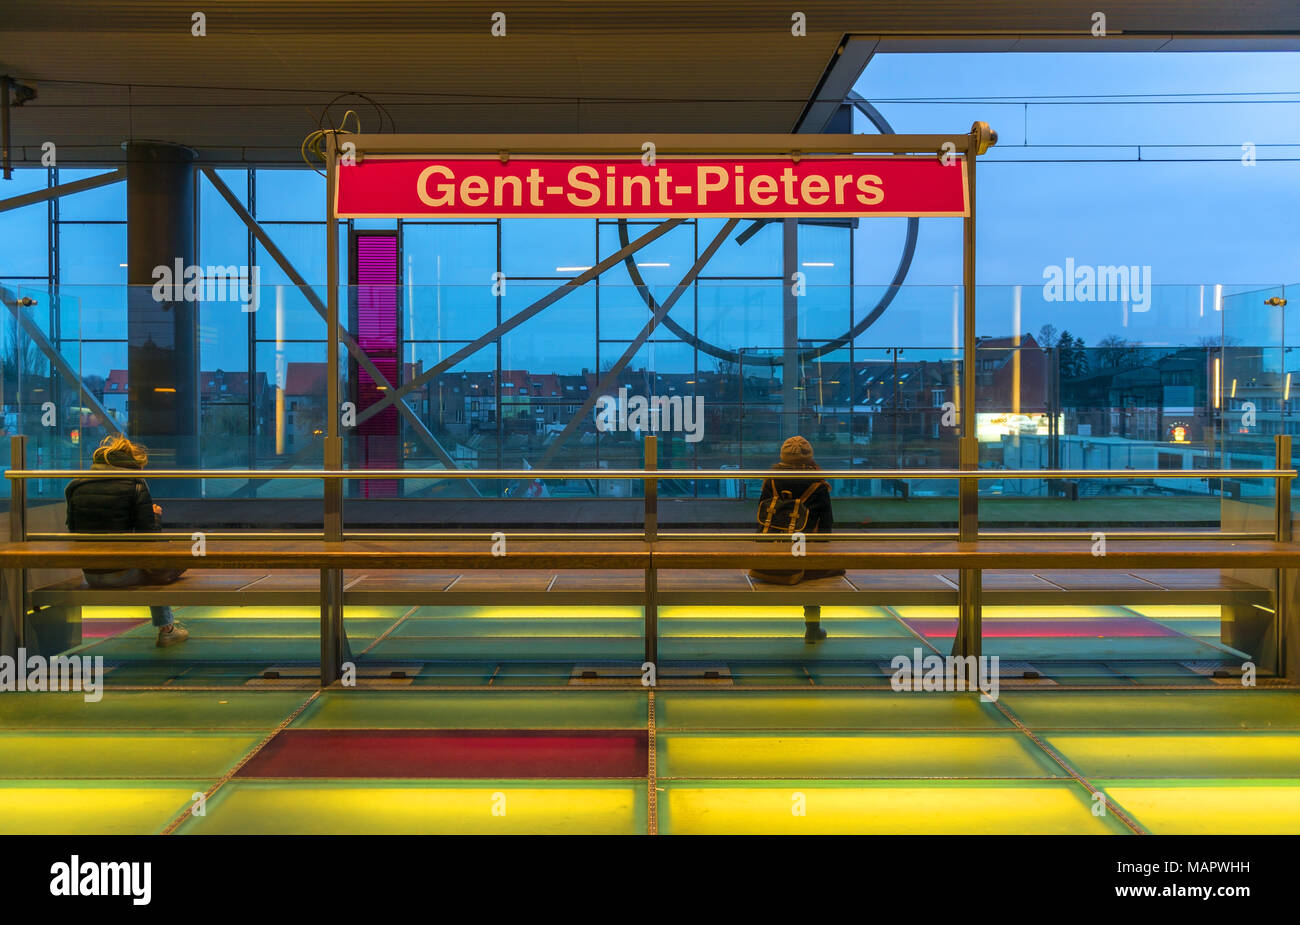 Zwei Personen auf einer Plattform der Gent Bahnhof mit beleuchtetem Fußboden und grelle Farben, Belgien wartet. Stockfoto